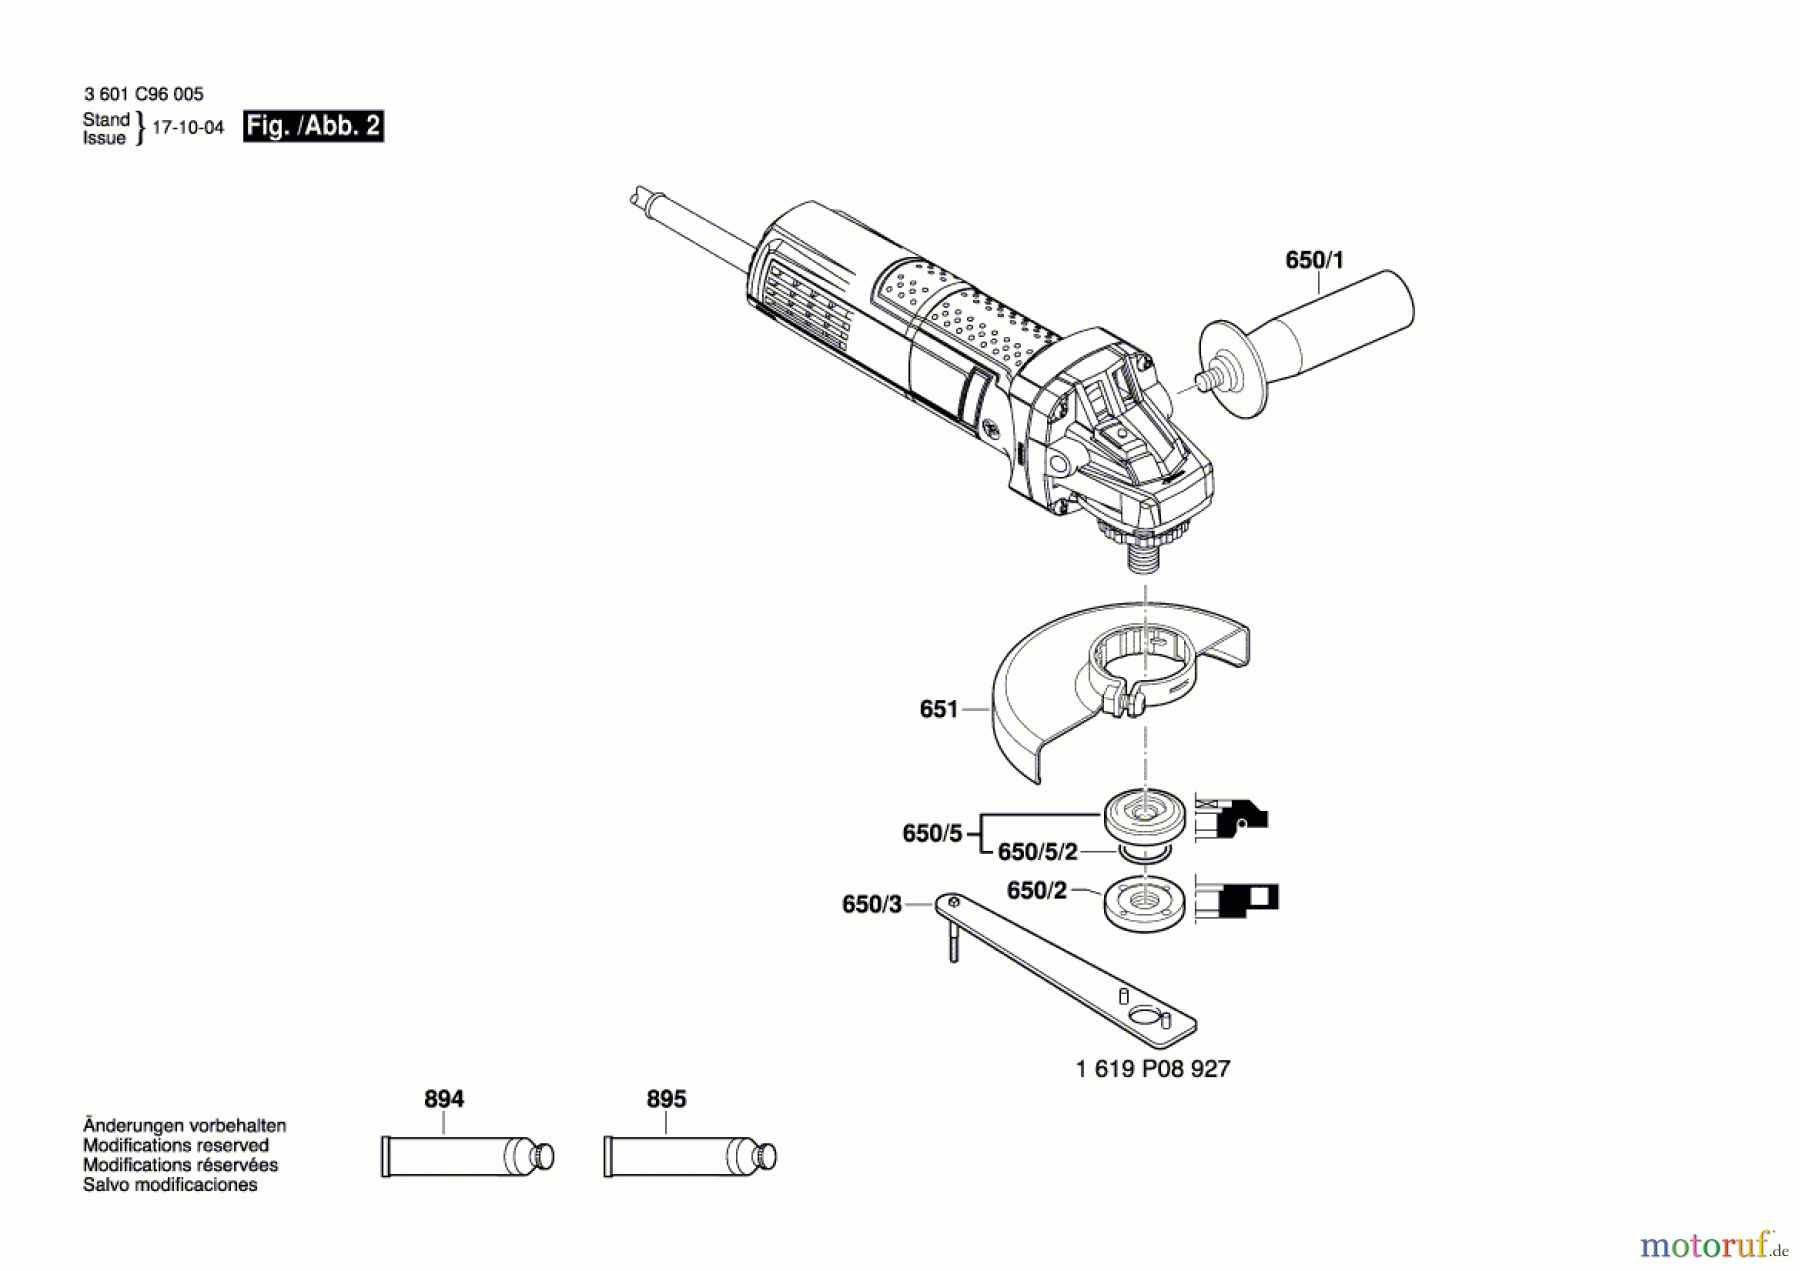  Bosch Werkzeug Winkelschleifer GWS 880 Seite 2